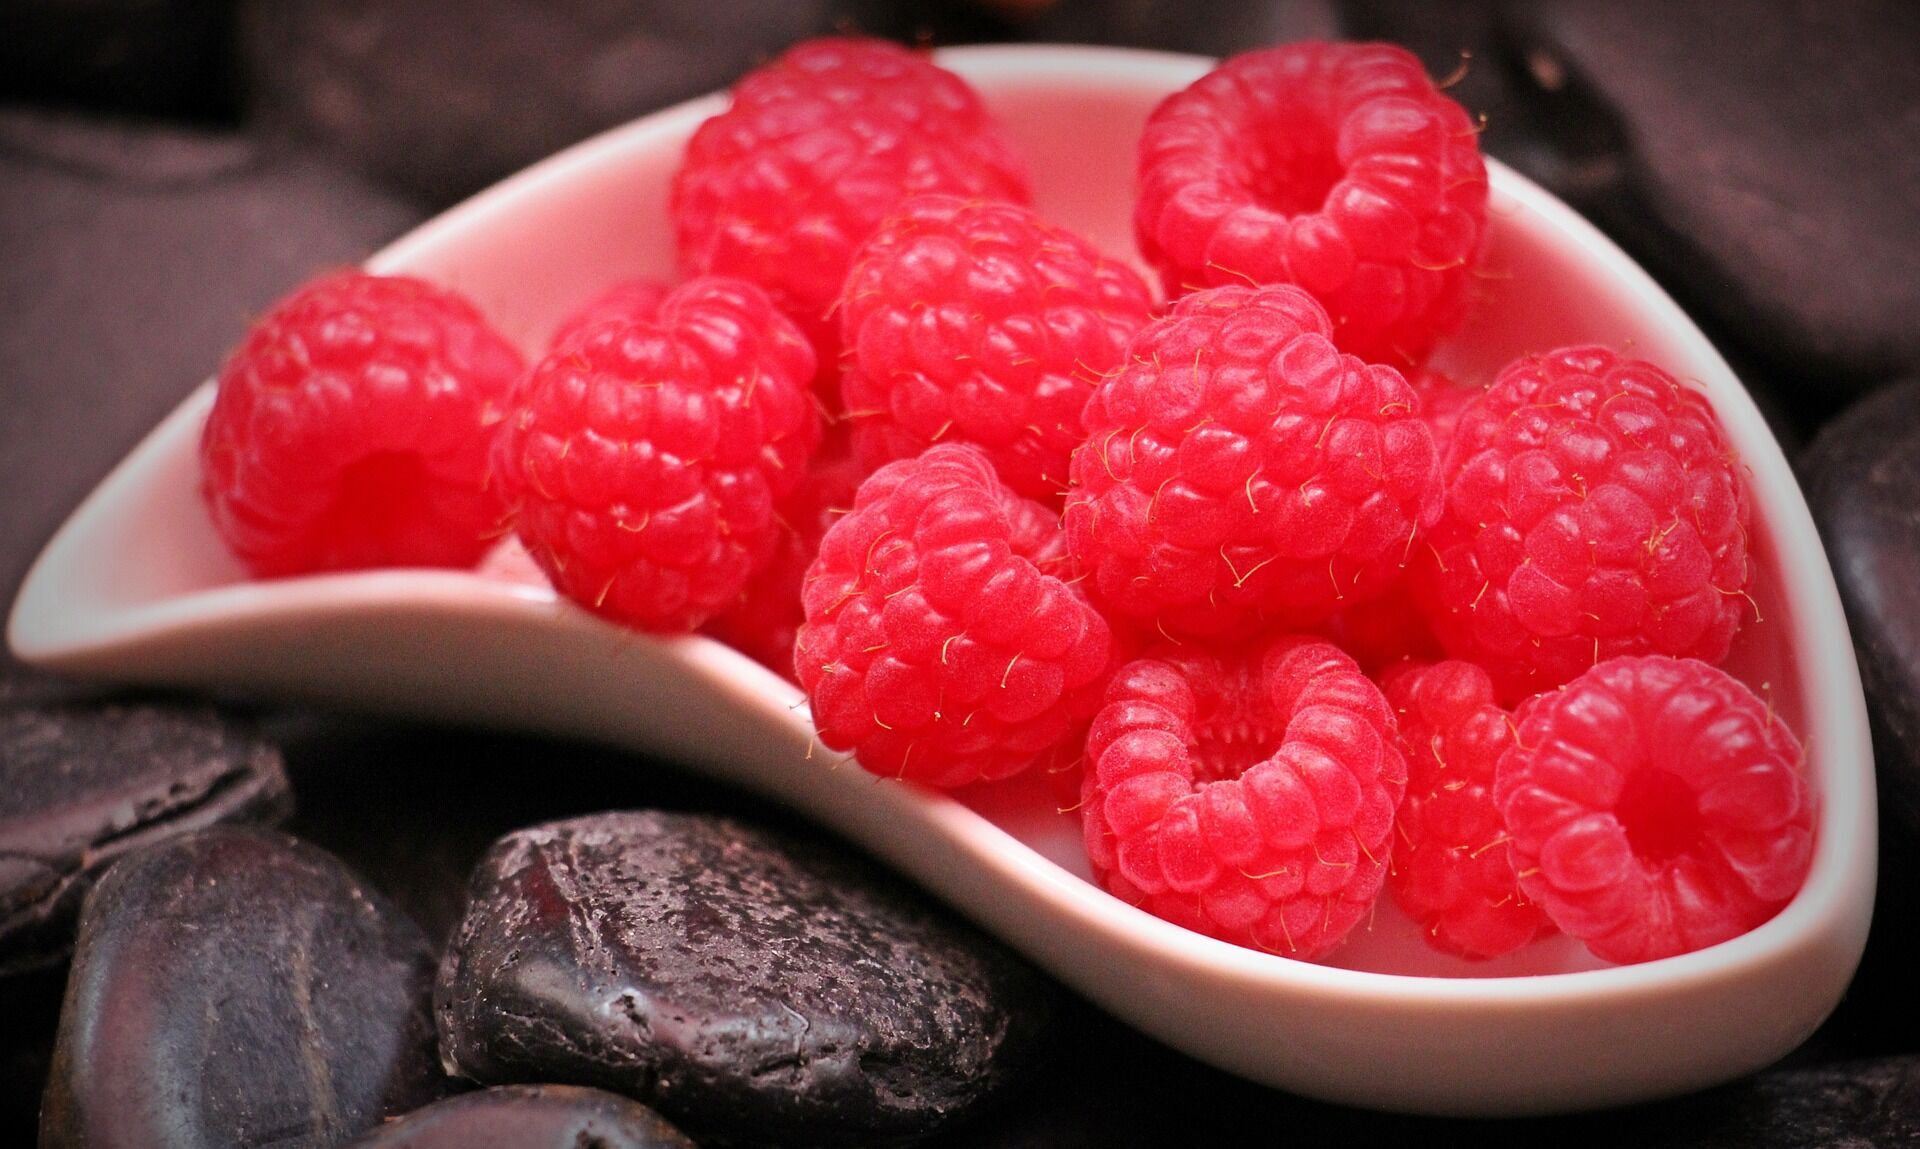 Raspberries for freezing